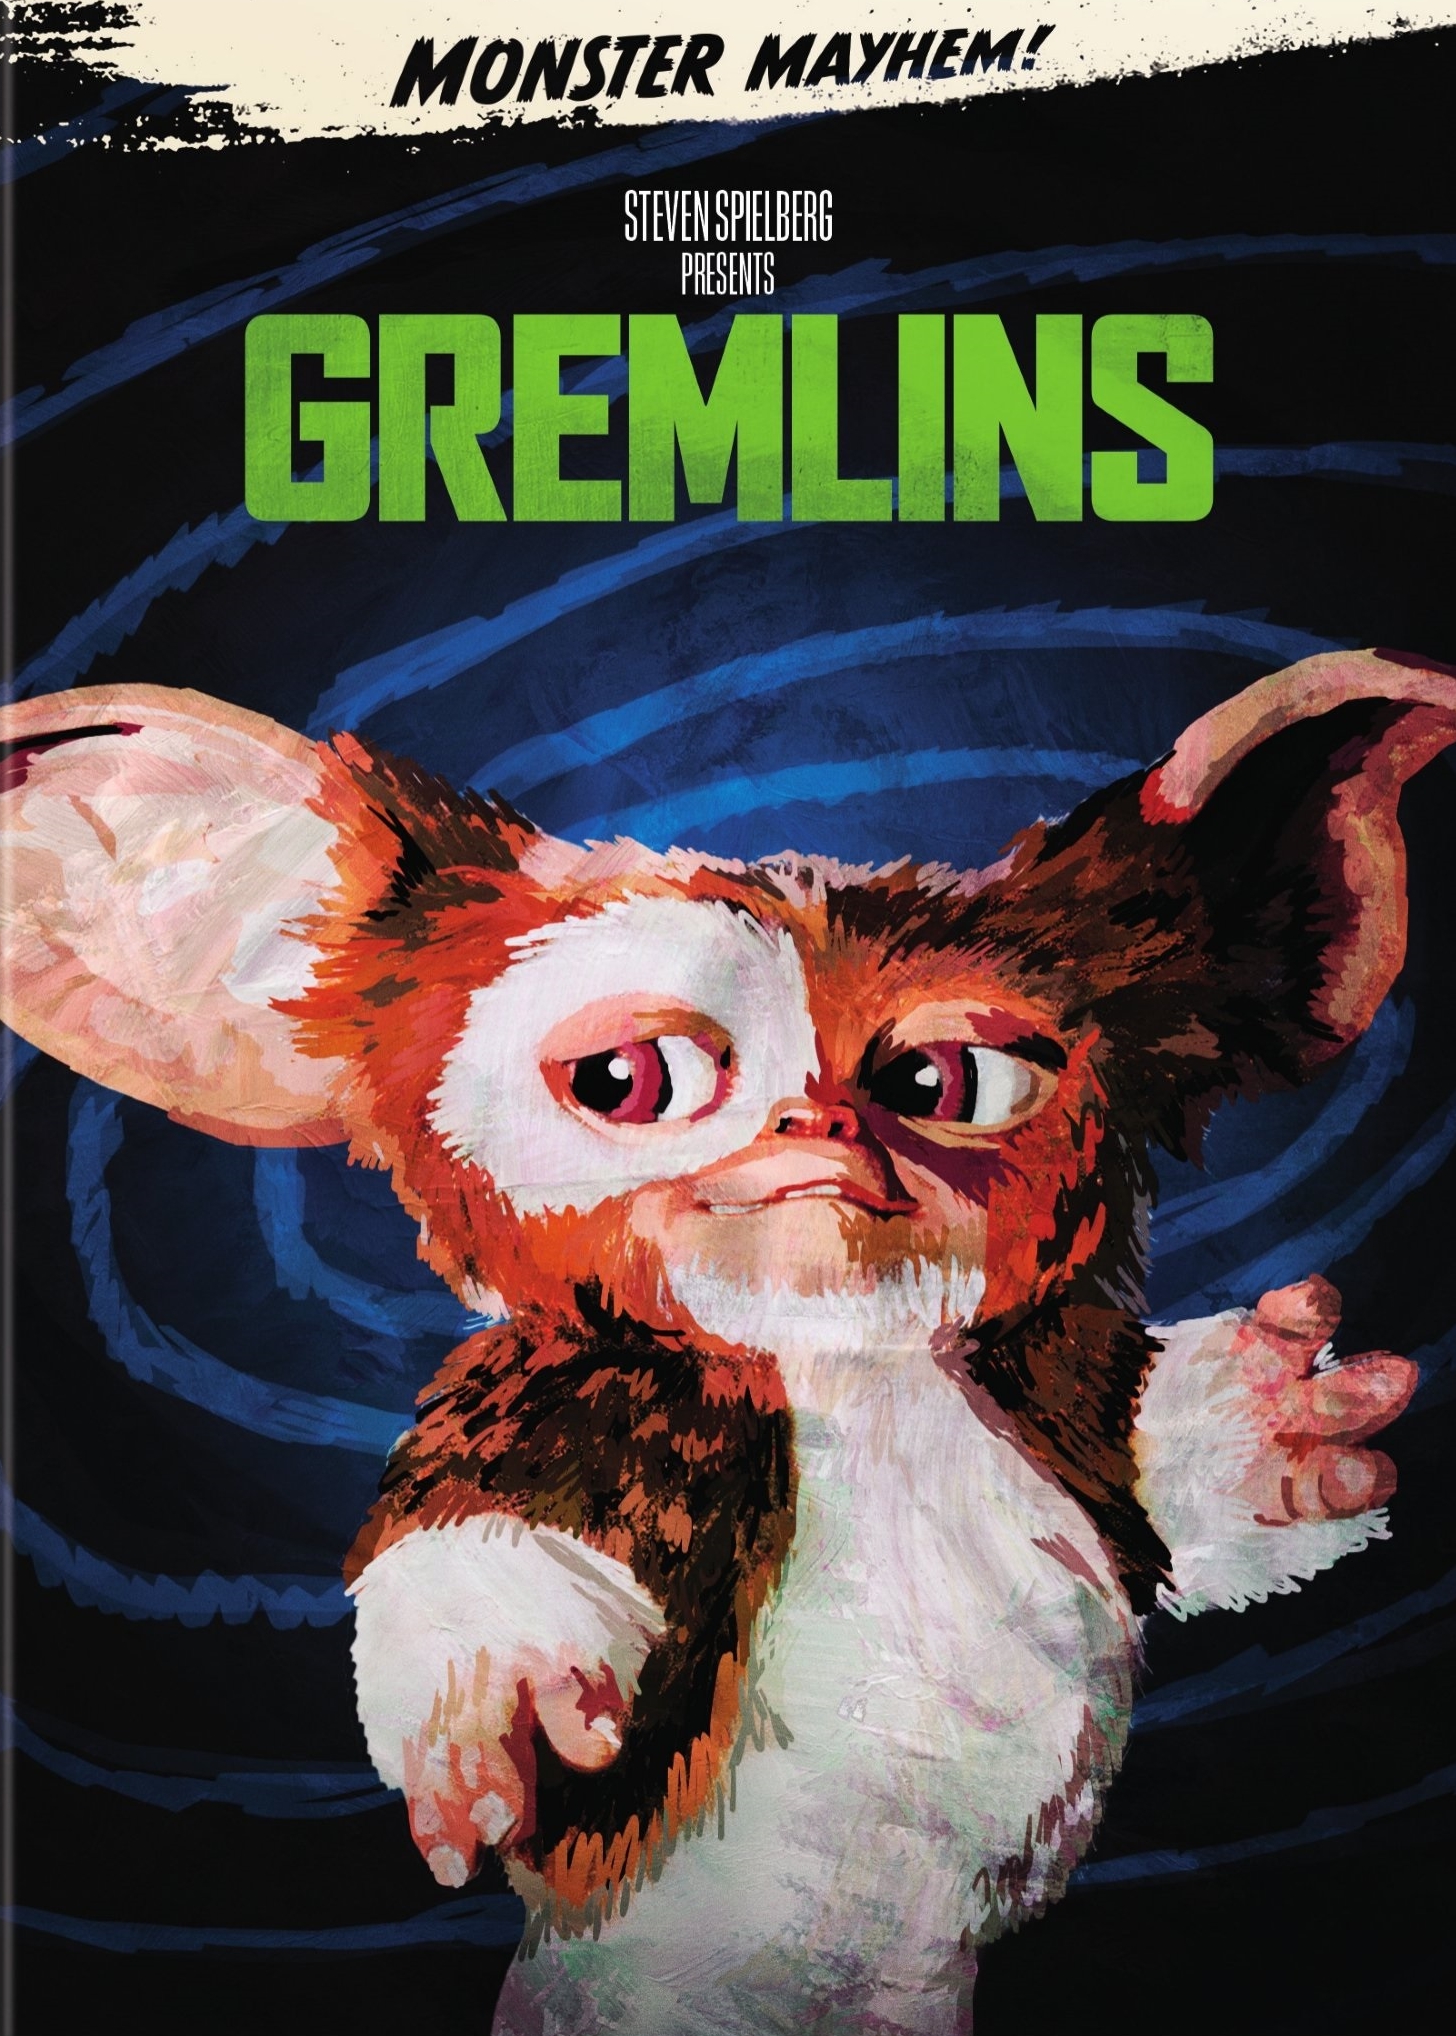 Gremlins (Ultra HD, 1984) for sale online